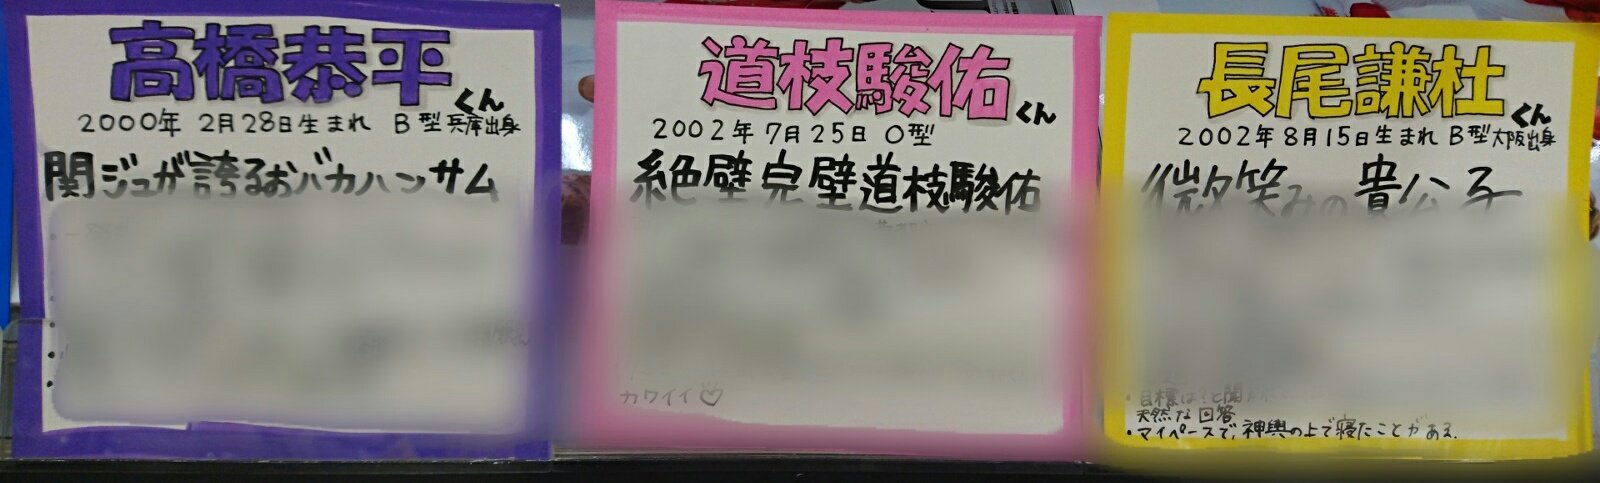 タワーレコード梅田NU茶屋町店 on Twitter: "【#なにわ男子】 関西Jr.より約4年ぶりに新ユニットが誕生🙌当店では爆イケから